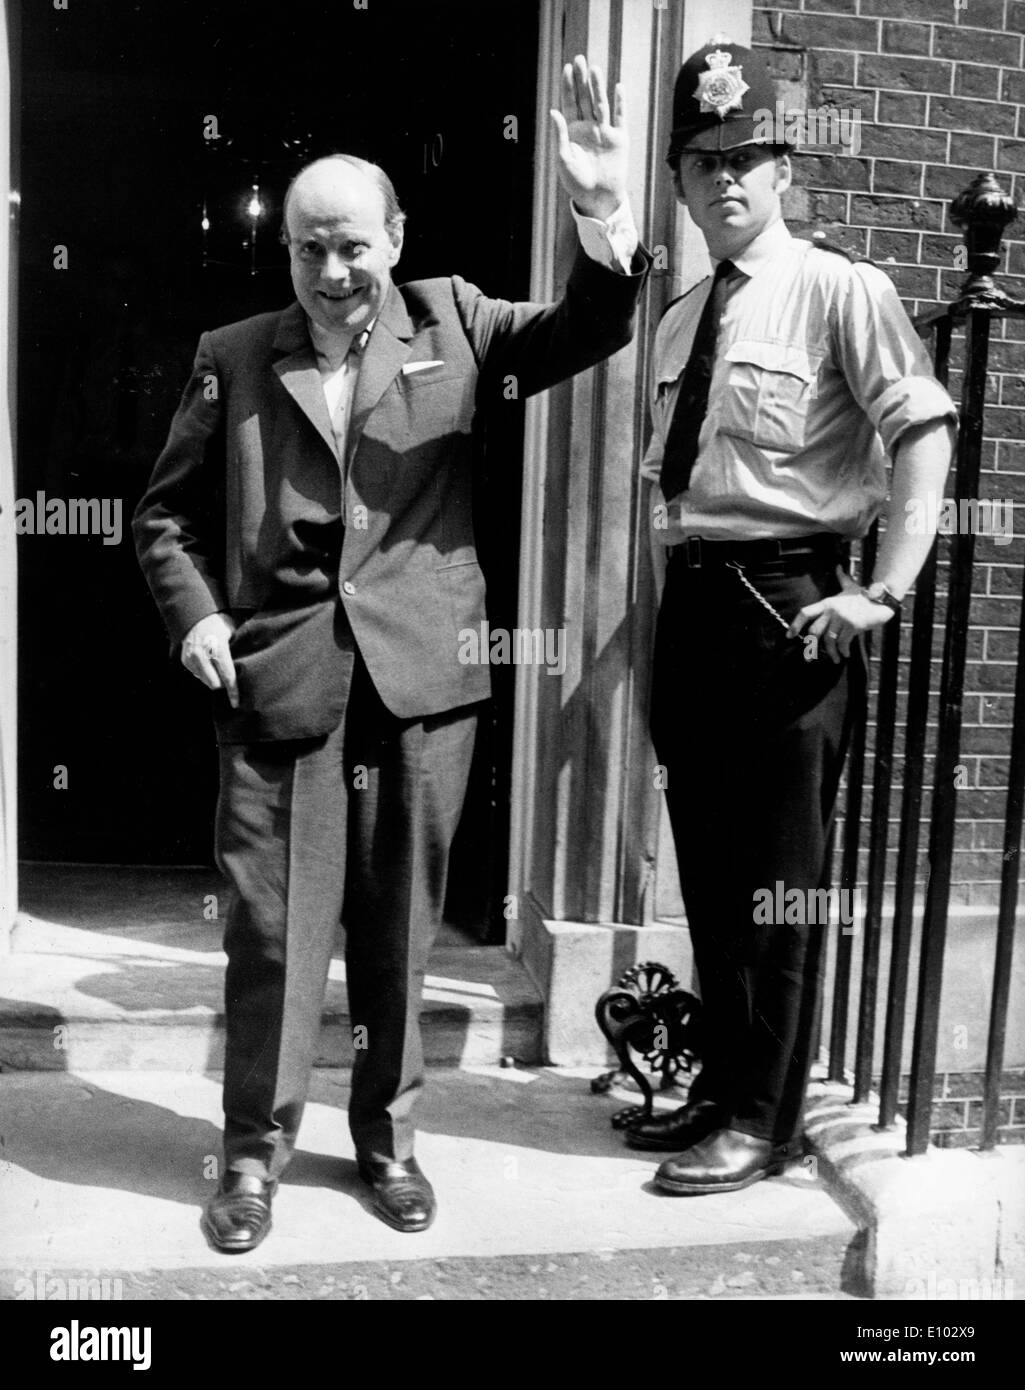 Politician Iain Macleod leaves No. 10 Downing Street Stock Photo